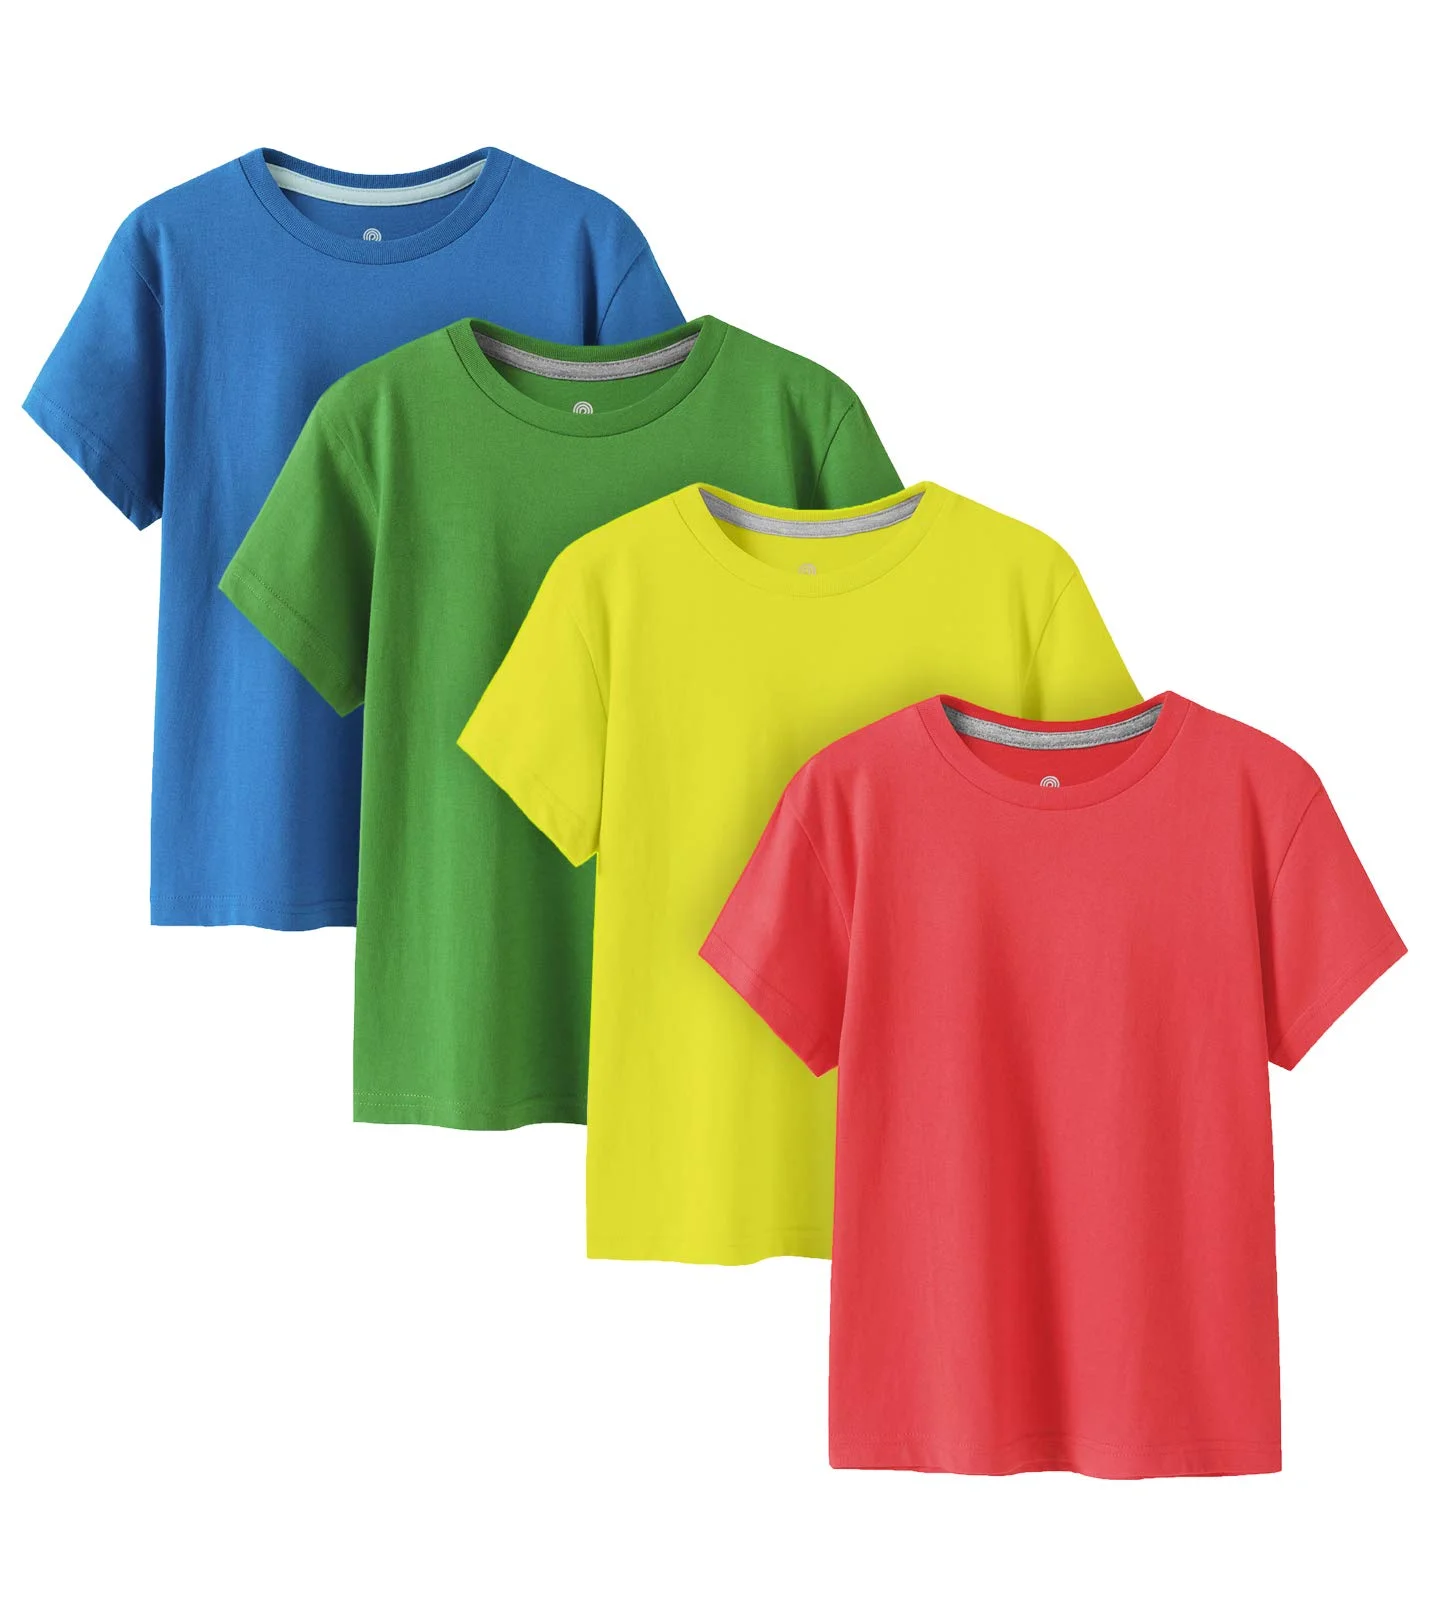 Wholesale T-shirts Uganda